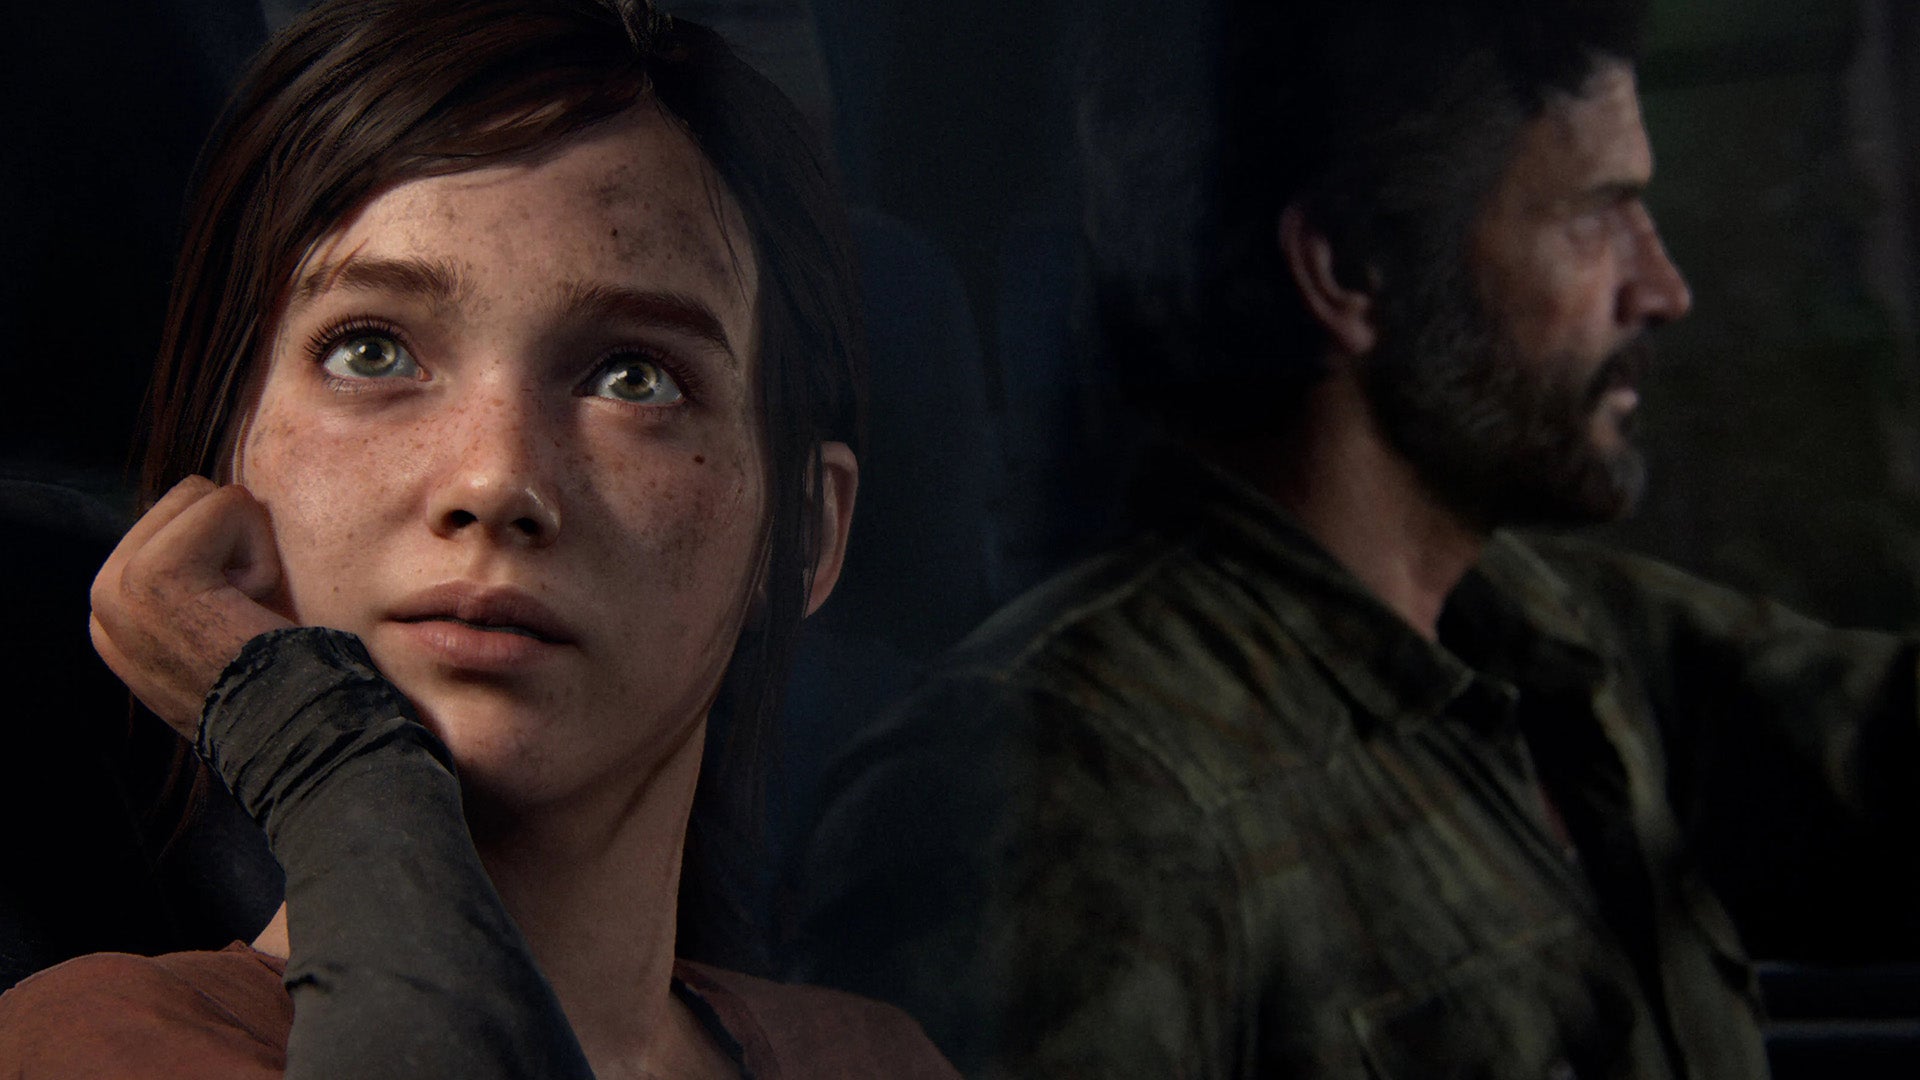 Kami belum melihat acara TV The Last of US, jadi inilah cerita tentang uji coba The Last of Us Part 1 PS5 selama 2 jam